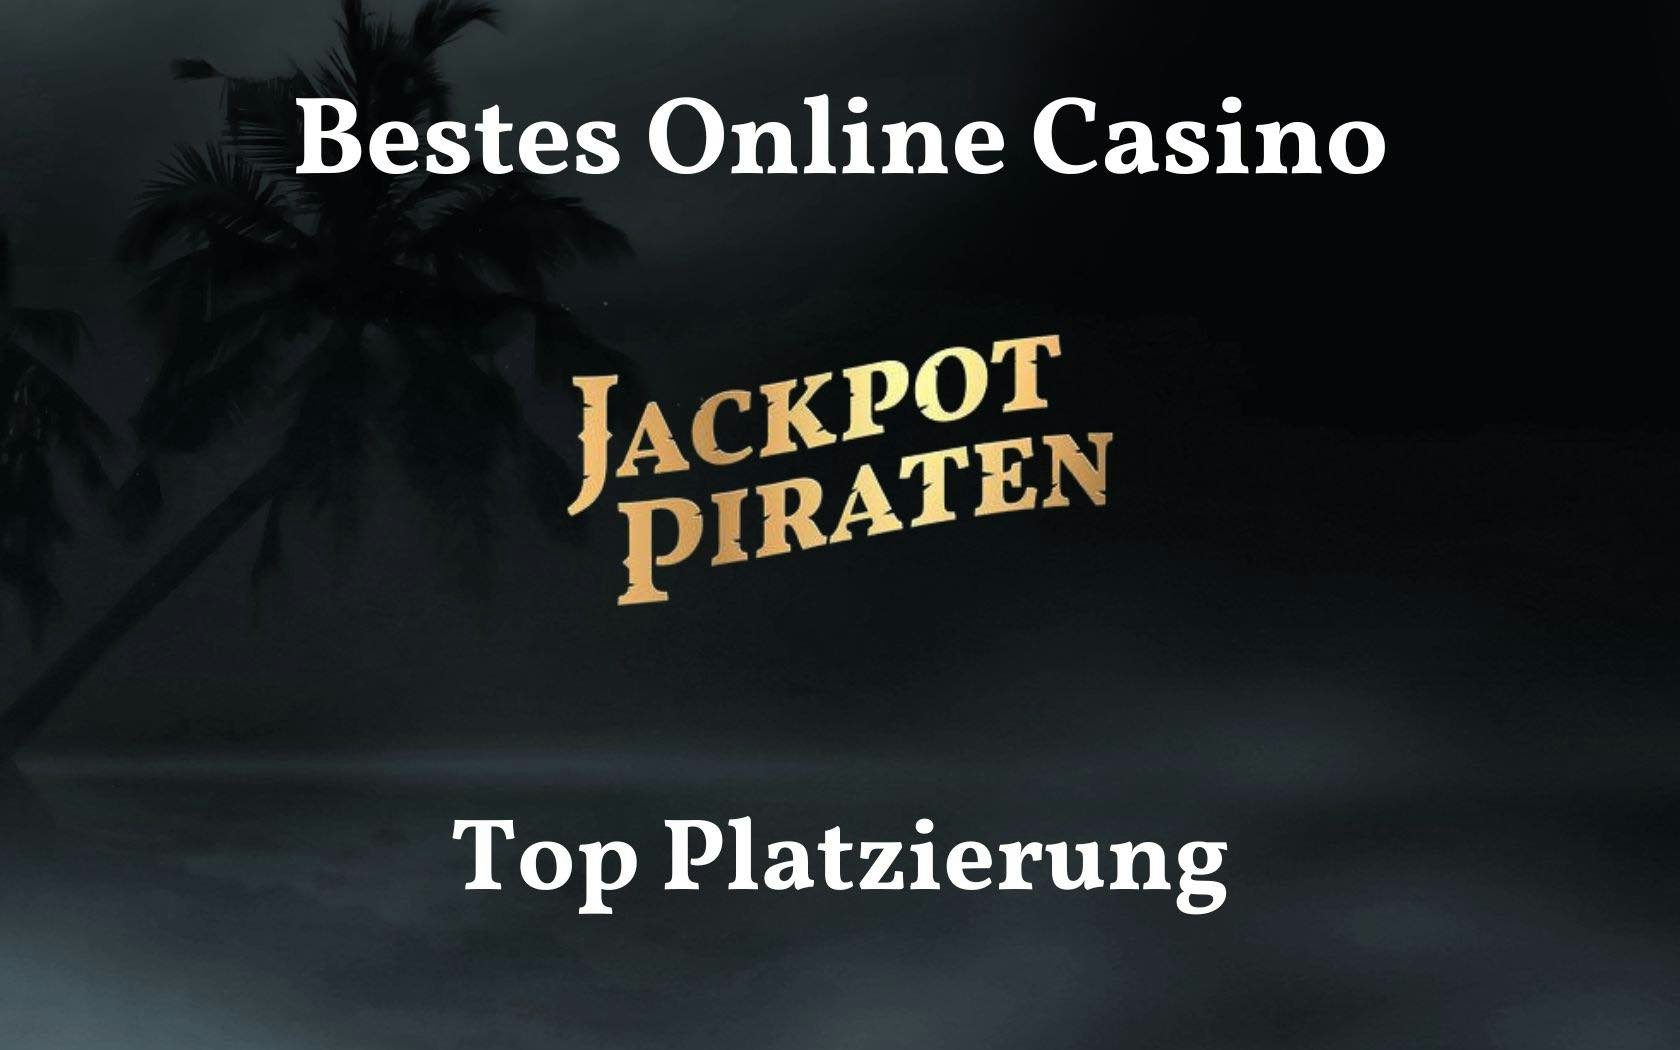 bestes-online-casino-award-platzierung-jackpotpiraten